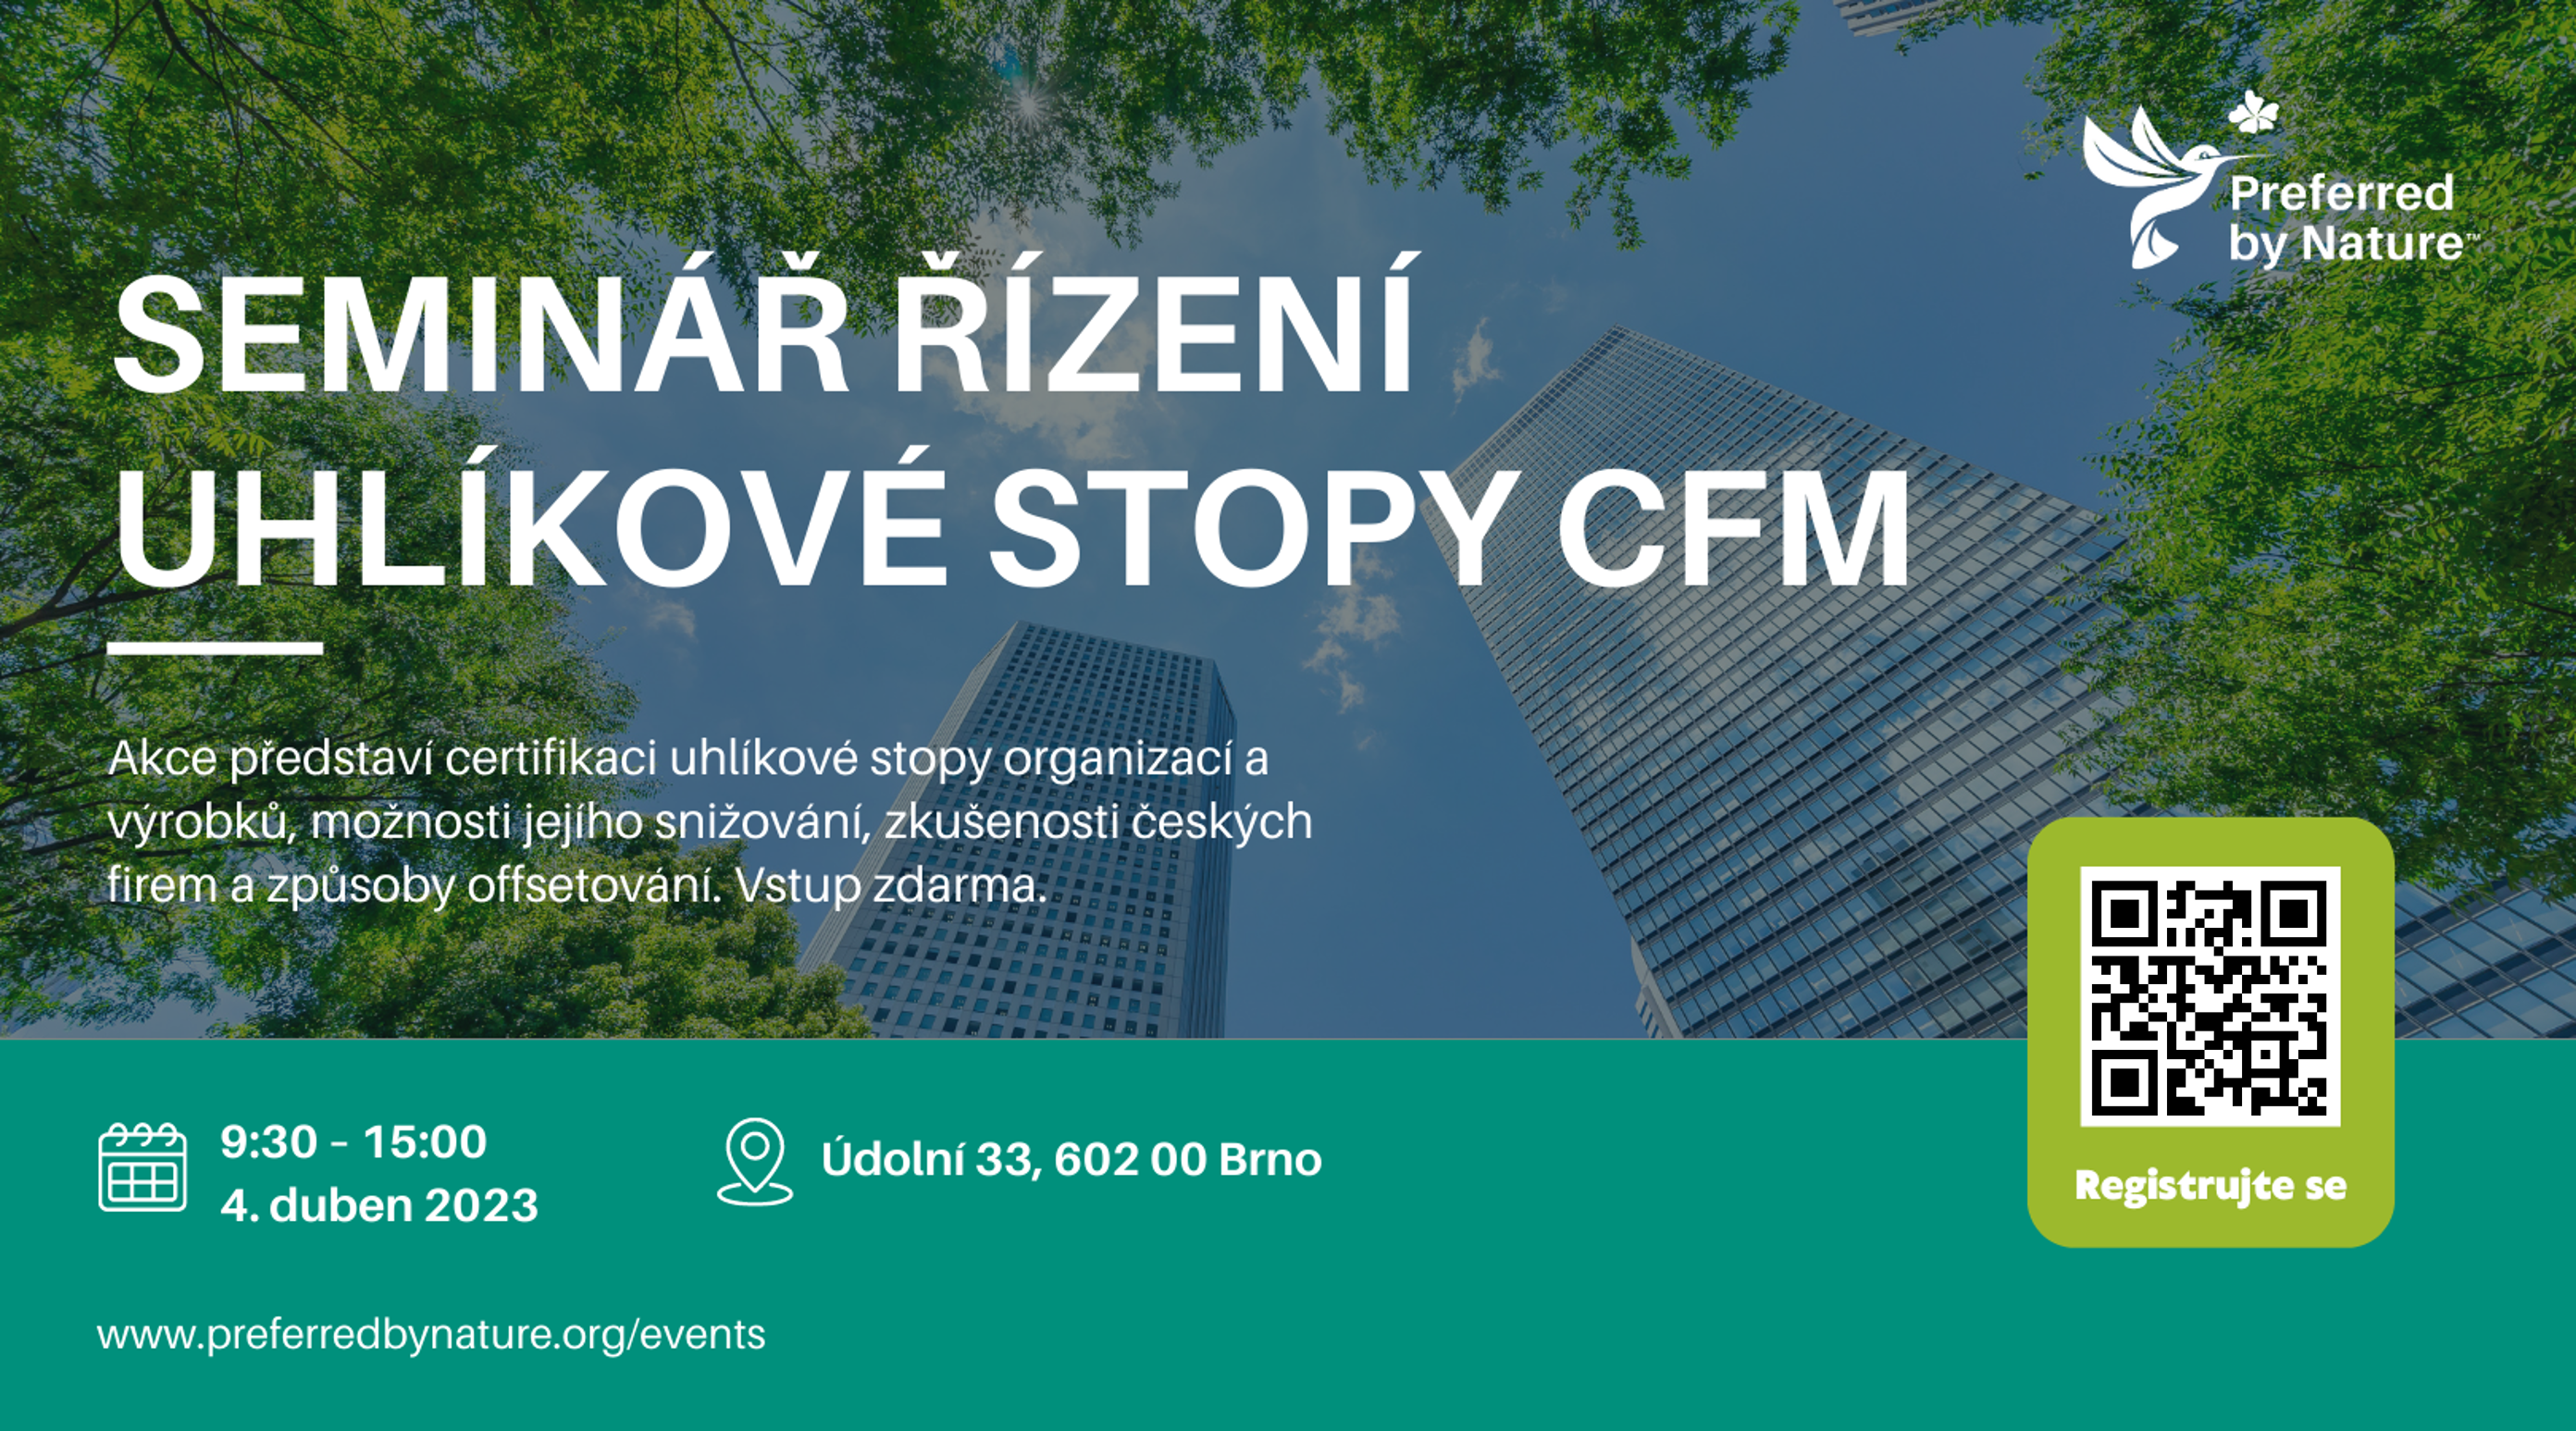 CFM seminar Czech